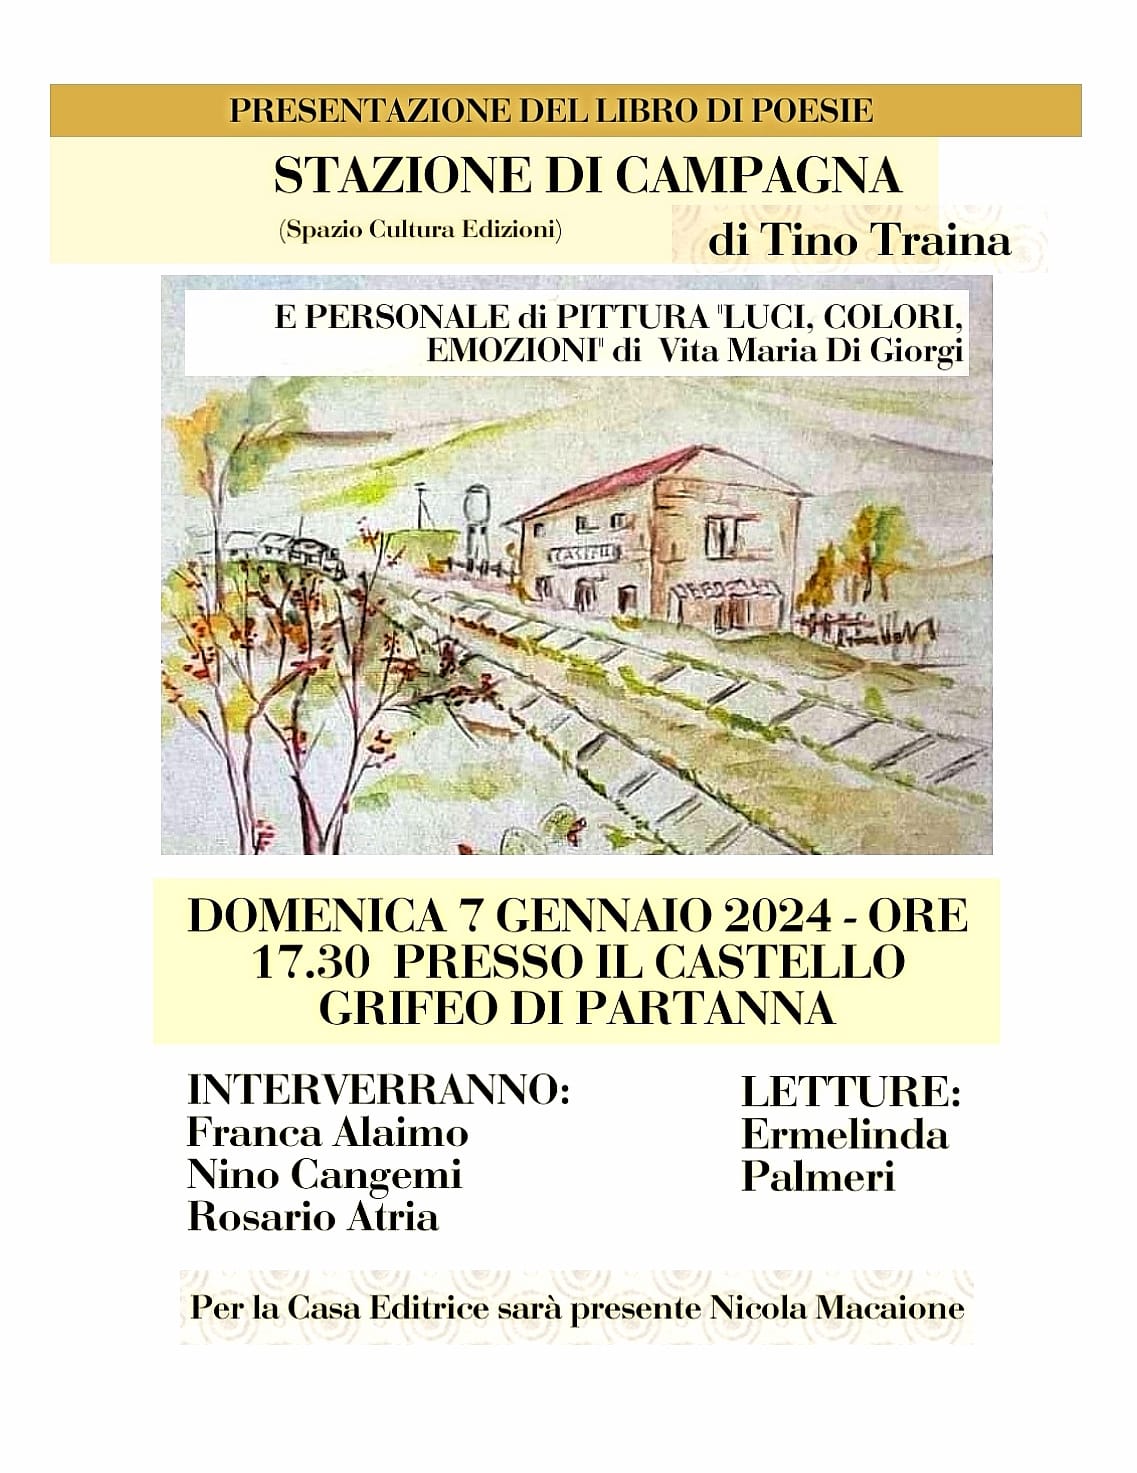 Domani sarà presentato anche a Partanna il libro di poesie di Tino Traina “Stazione di Campagna”